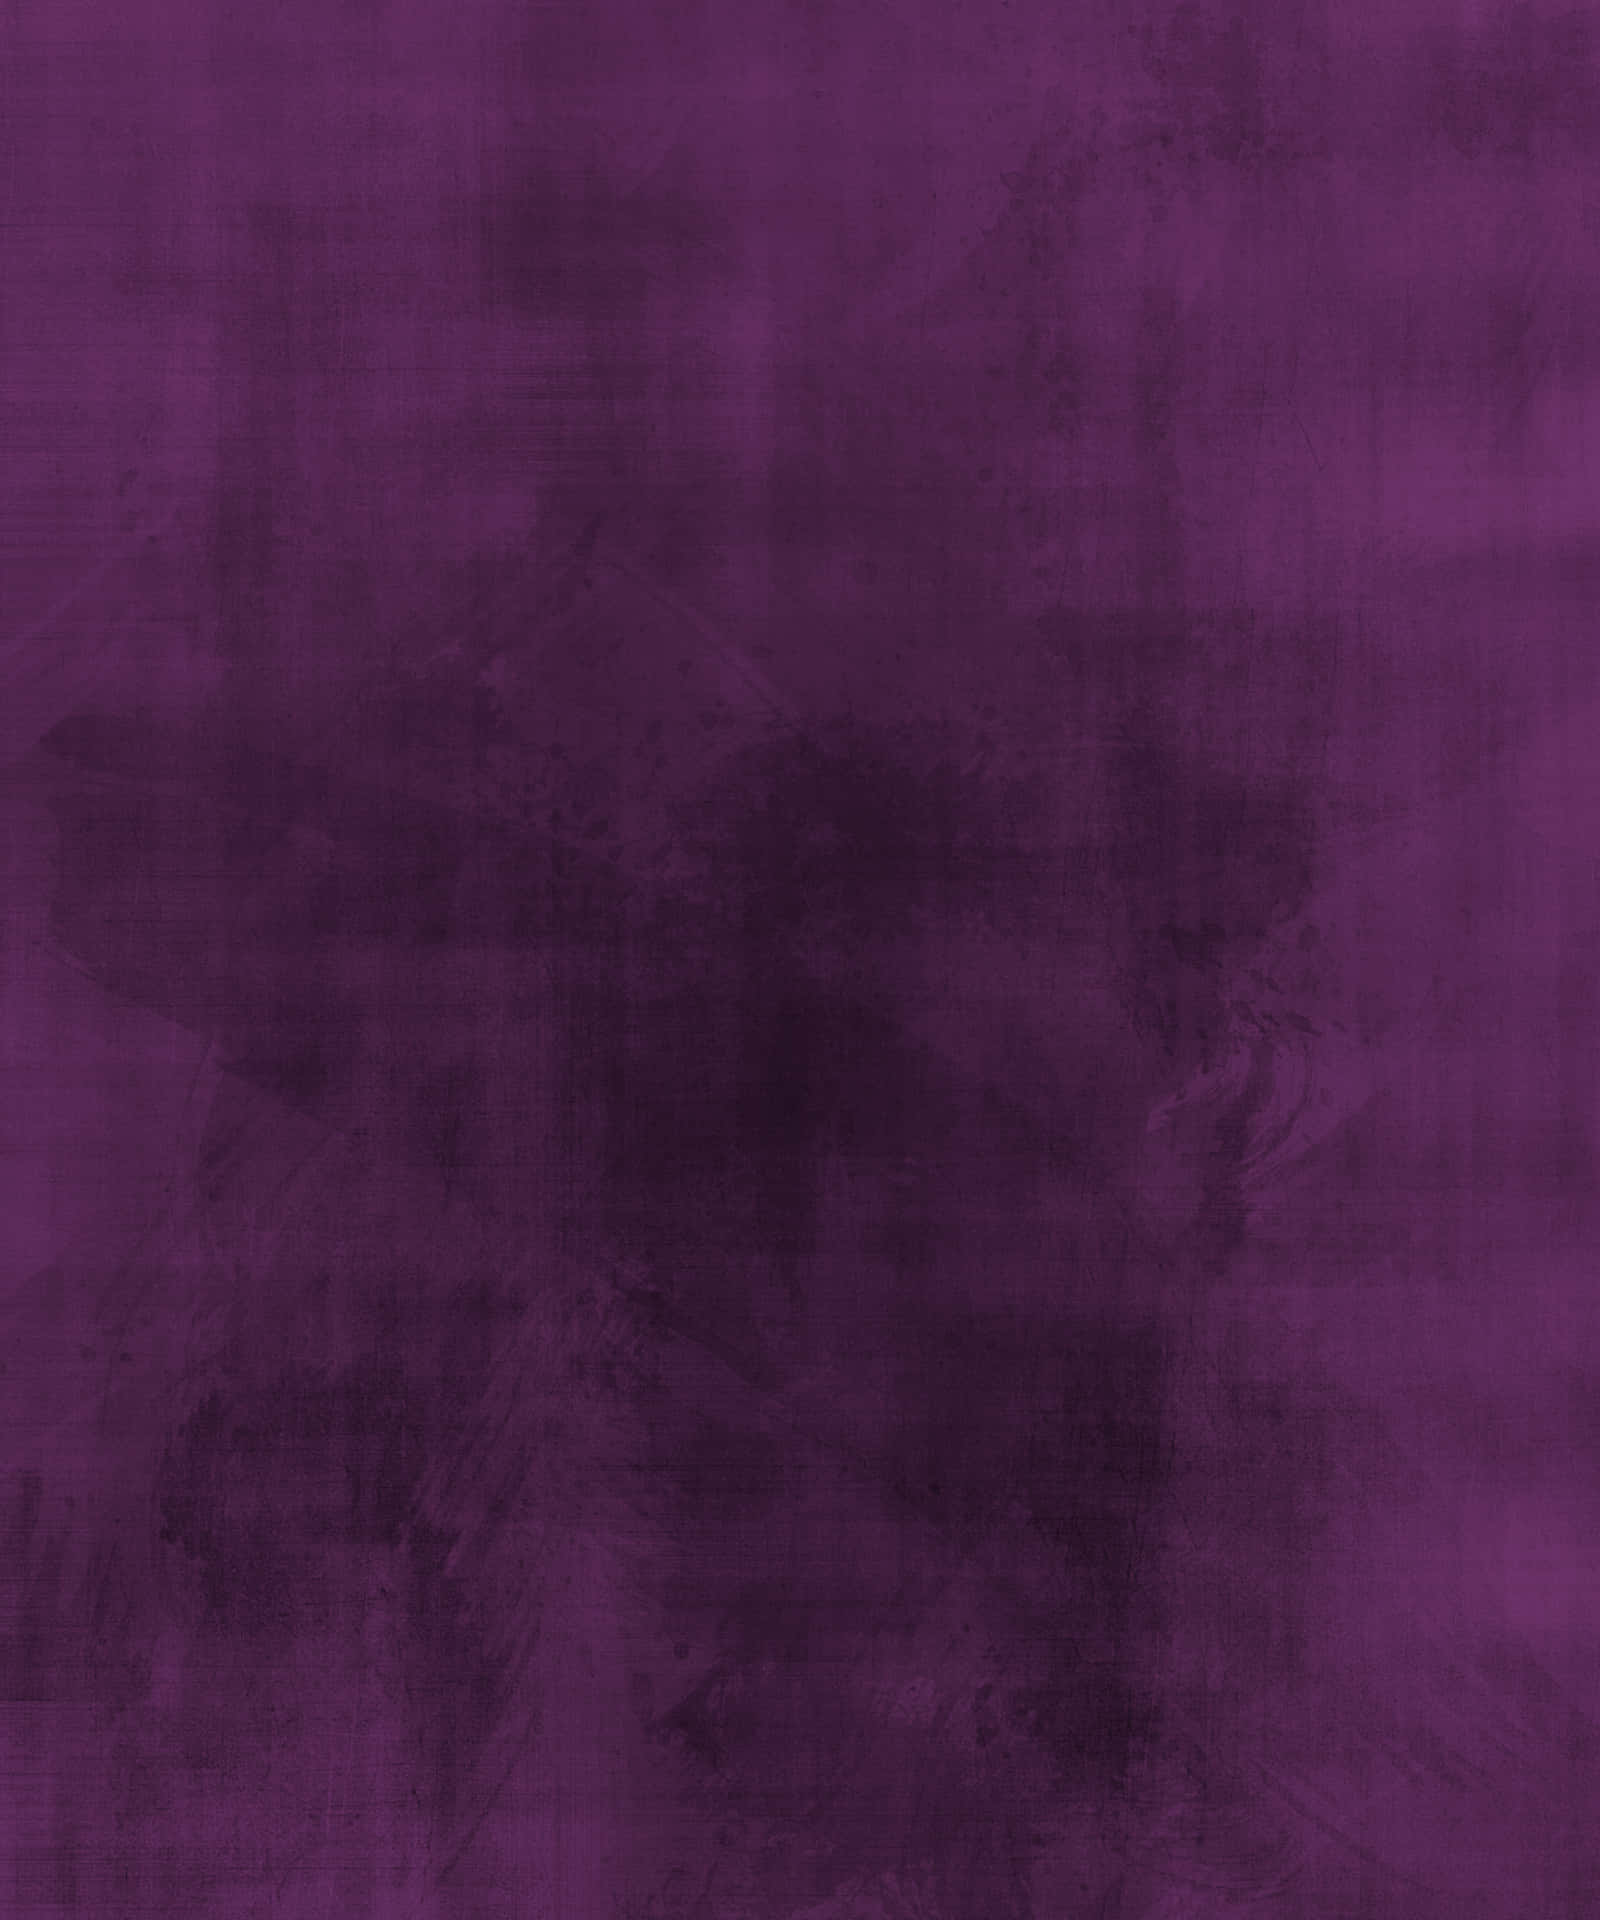 Fondode Pantalla En Tono Púrpura Audaz Y Atrevido Con Textura